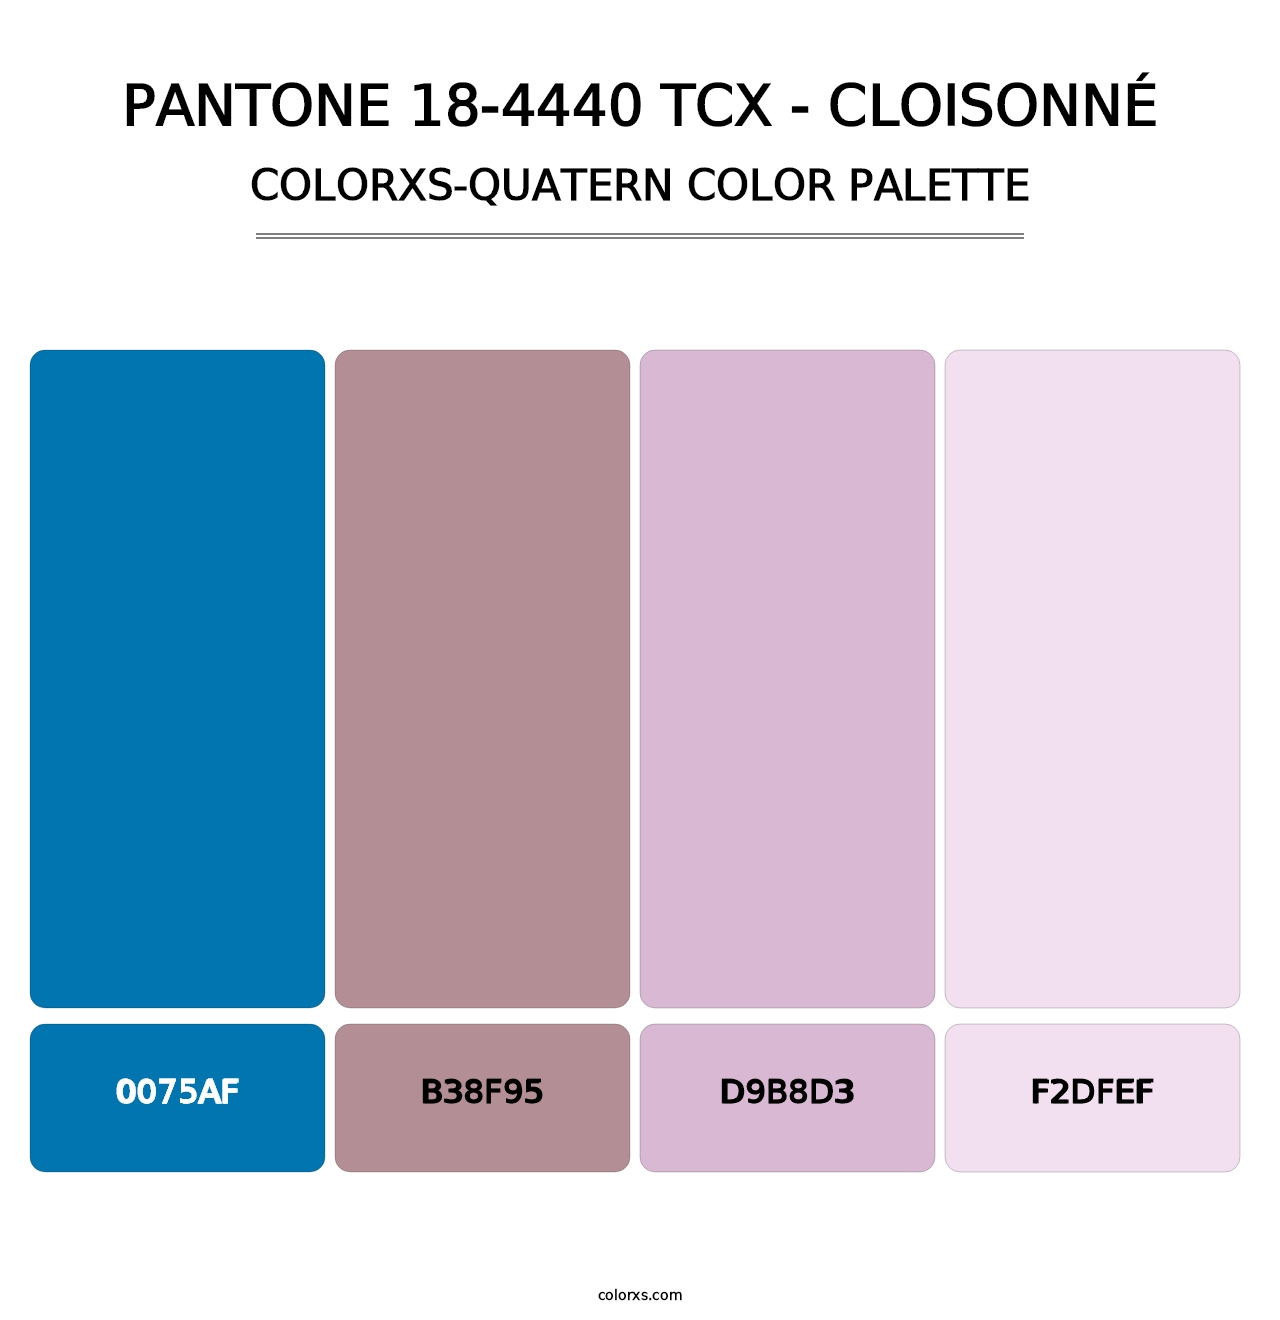 PANTONE 18-4440 TCX - Cloisonné - Colorxs Quatern Palette